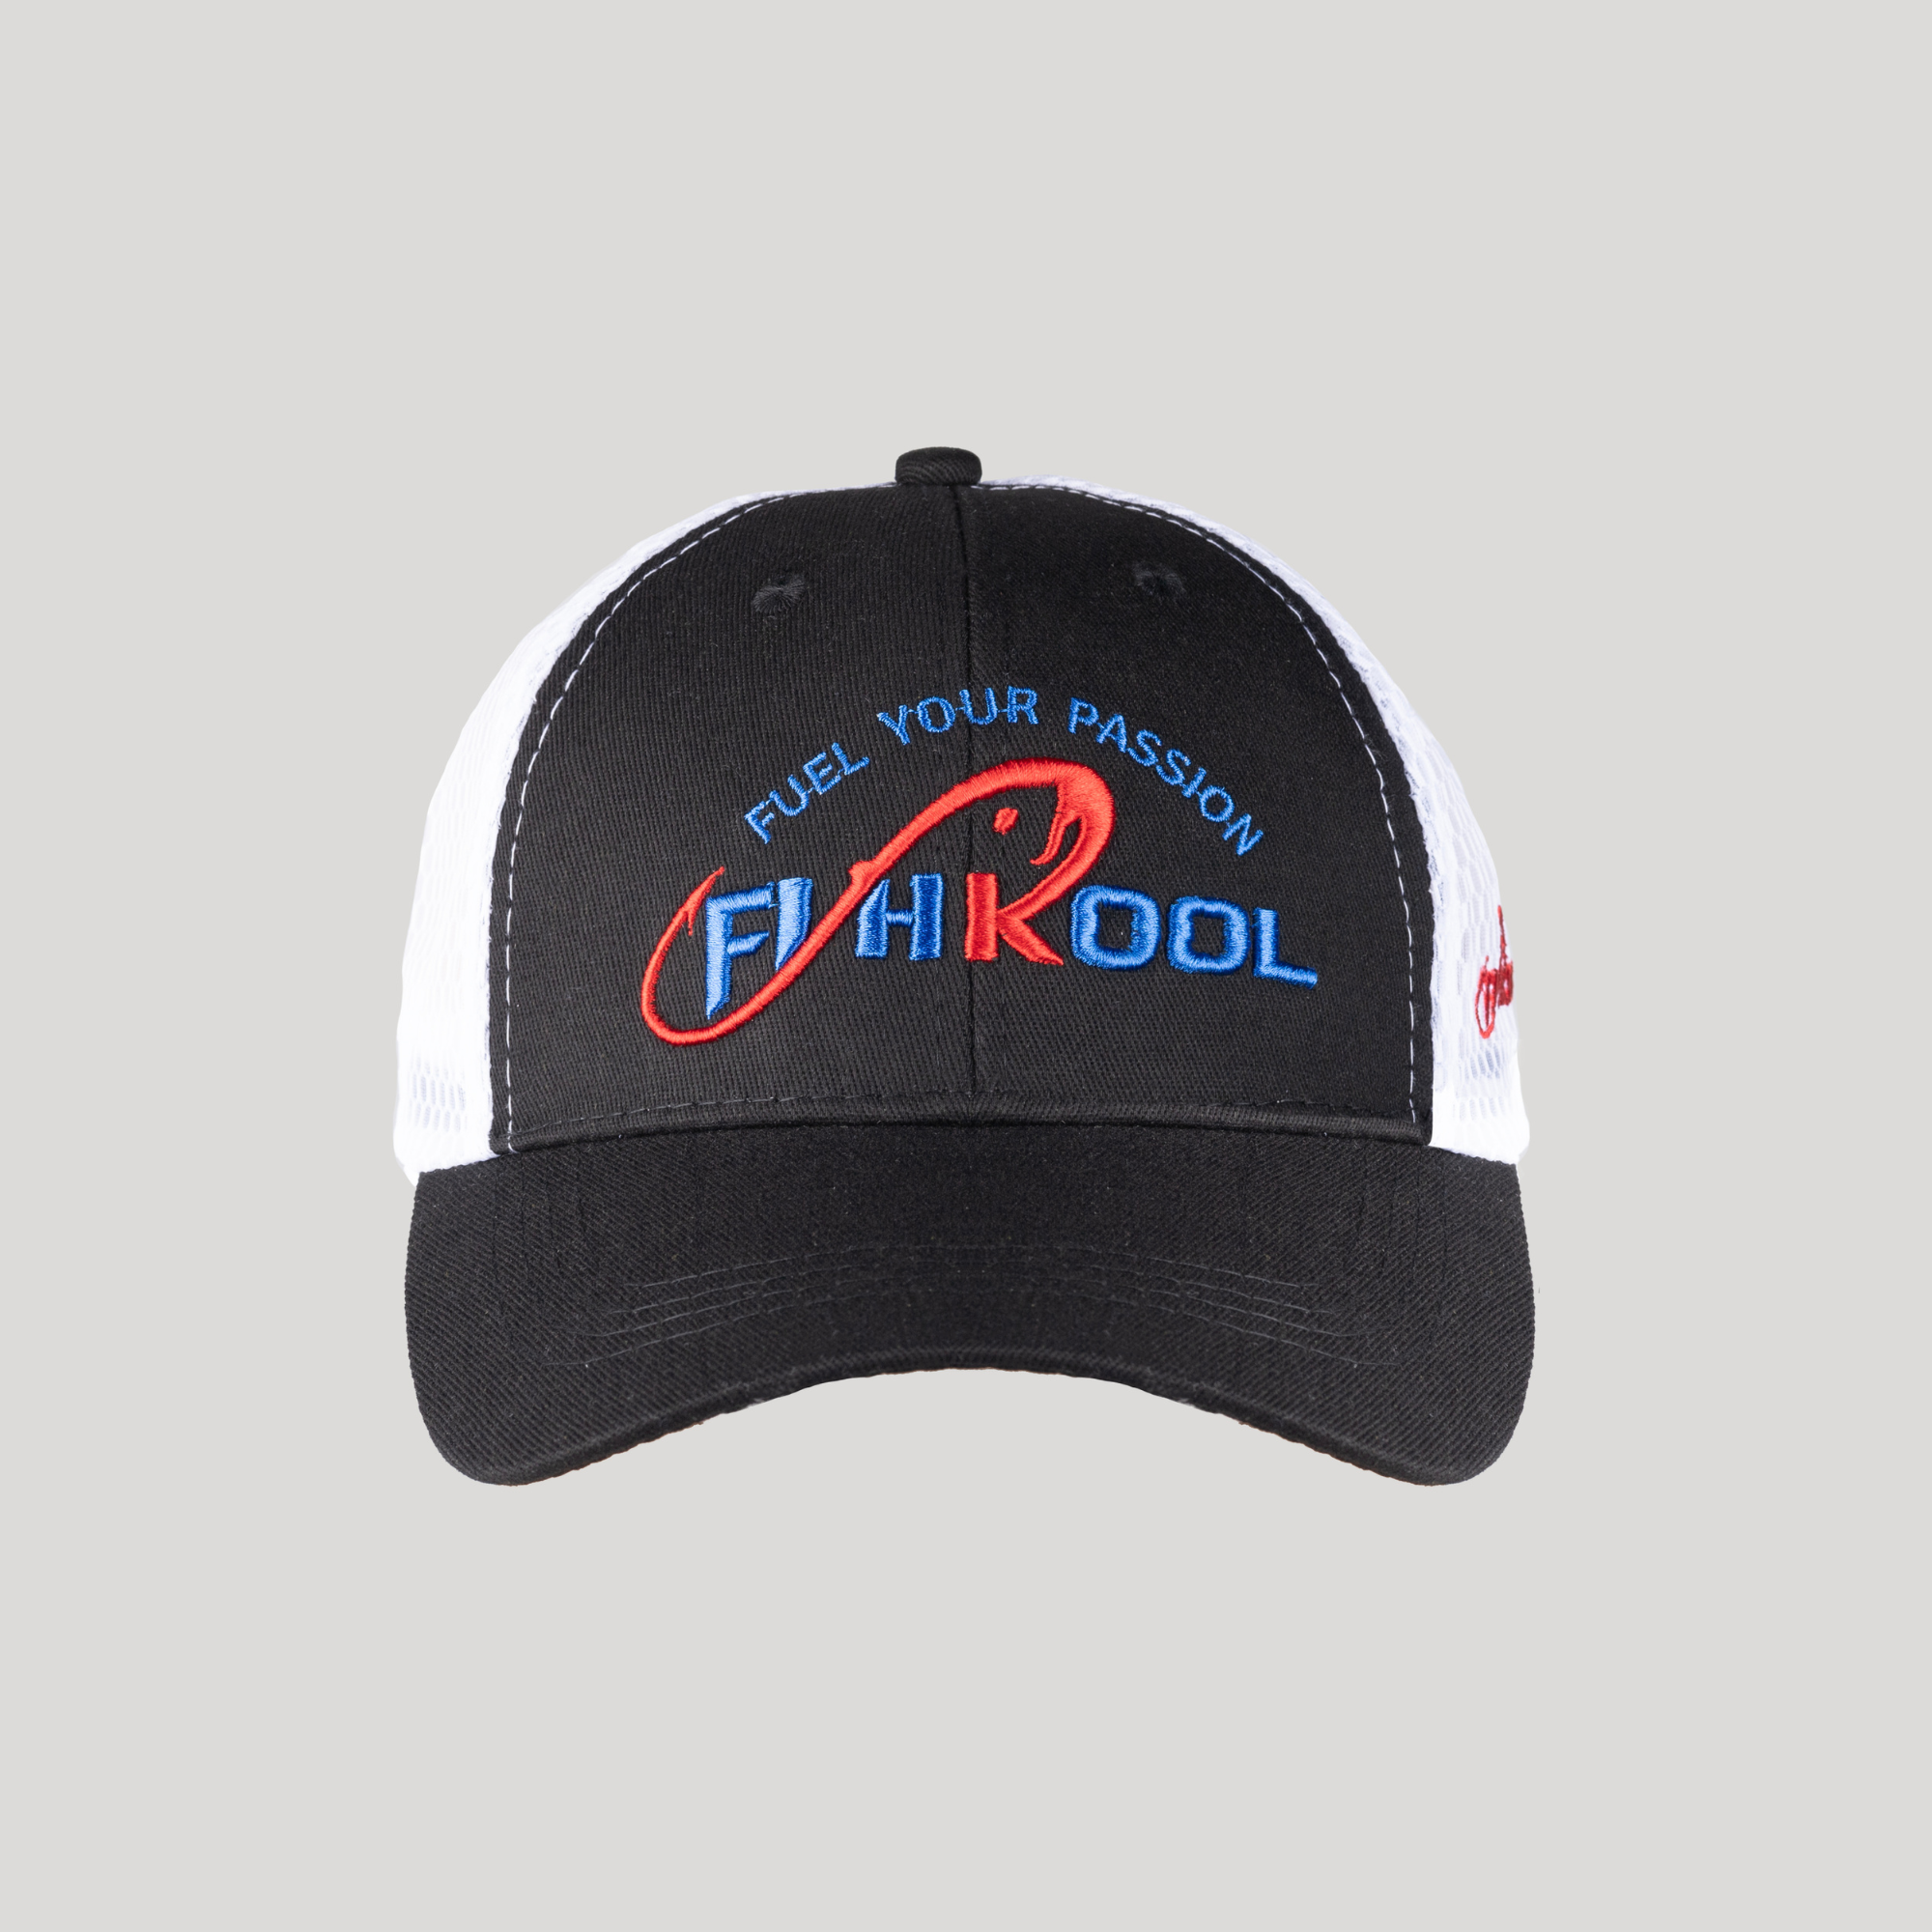 Fishkool Snapback Fishing Hat